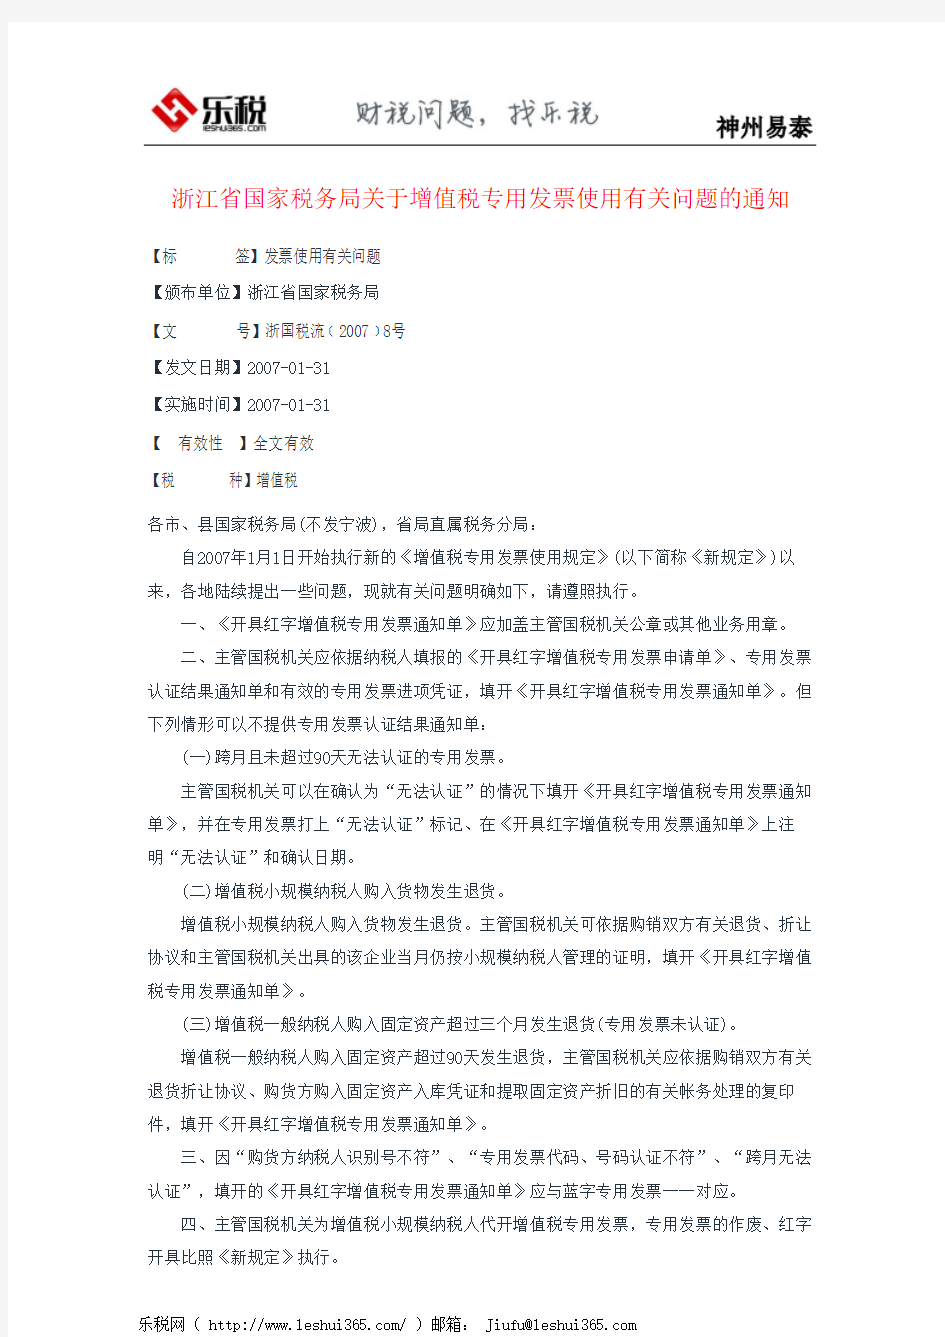 浙江省国家税务局关于增值税专用发票使用有关问题的通知